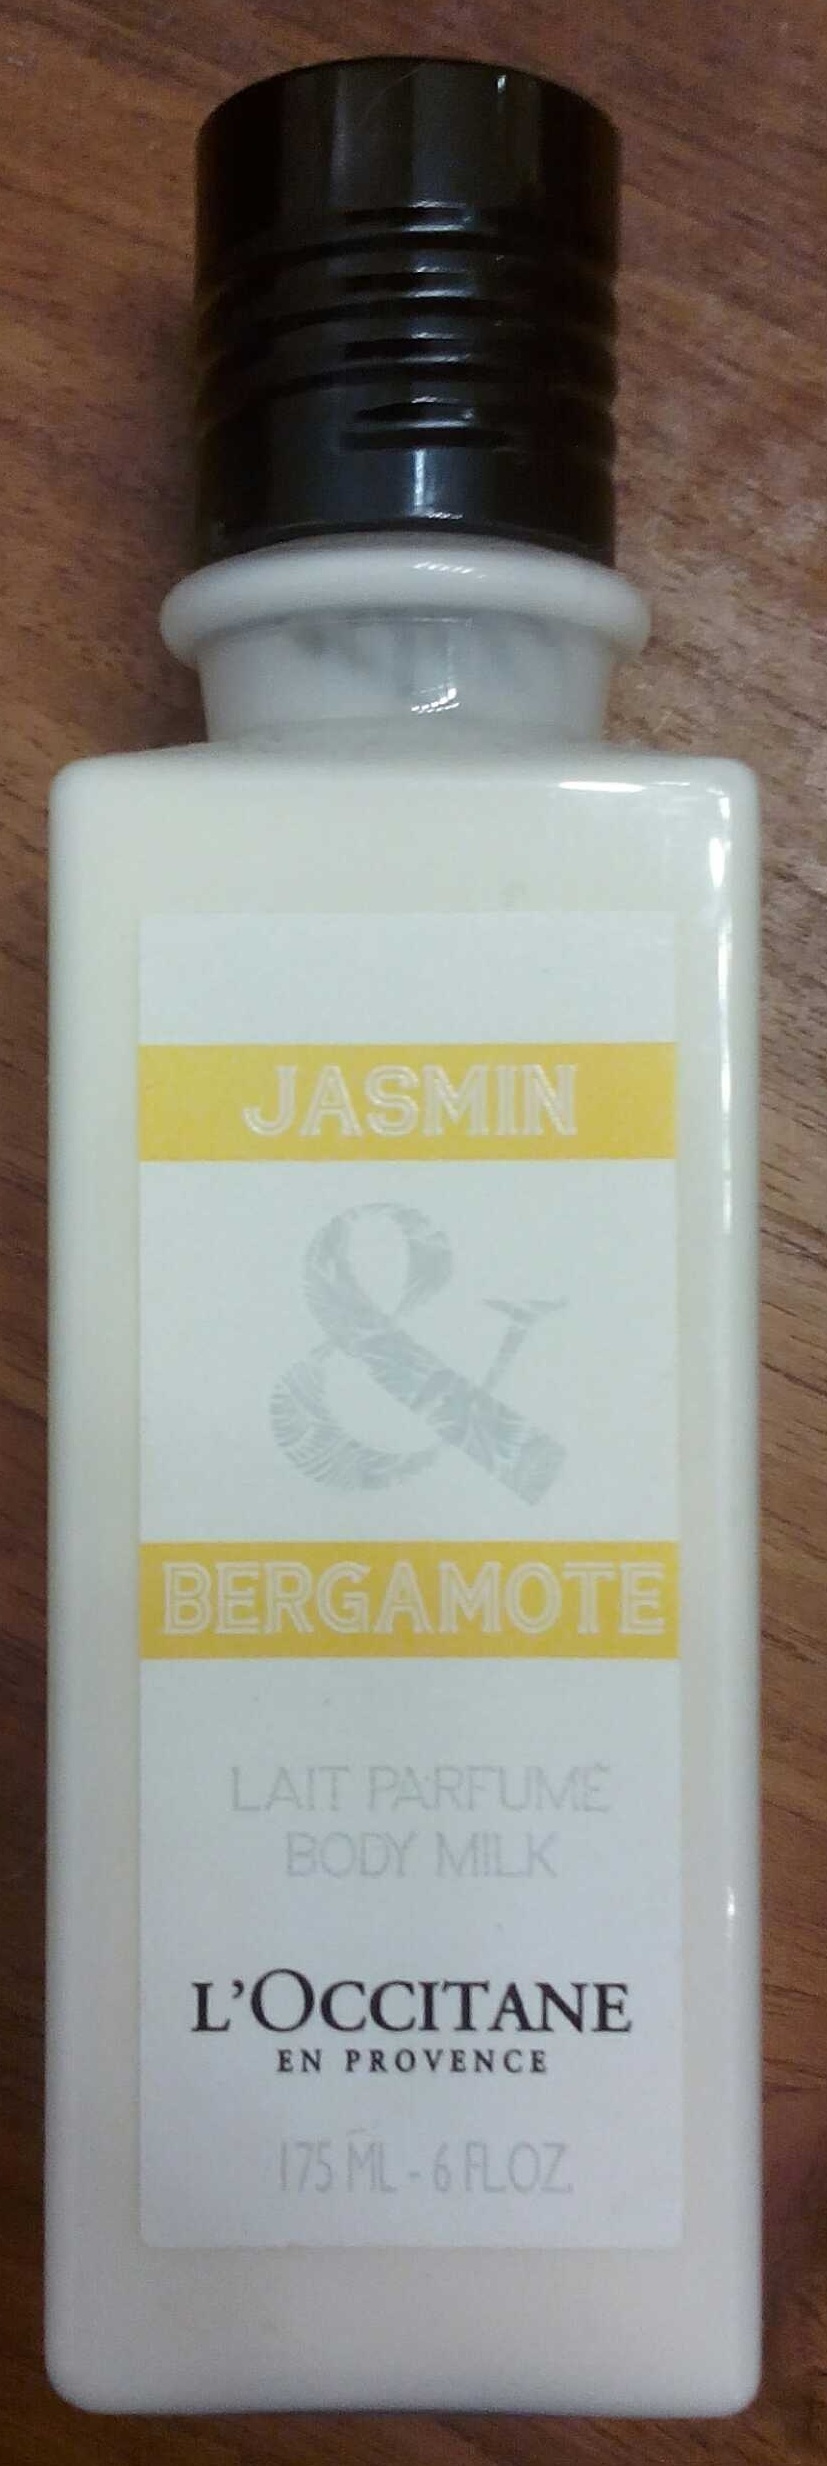 Jasmin & Bergamote - Product - fr